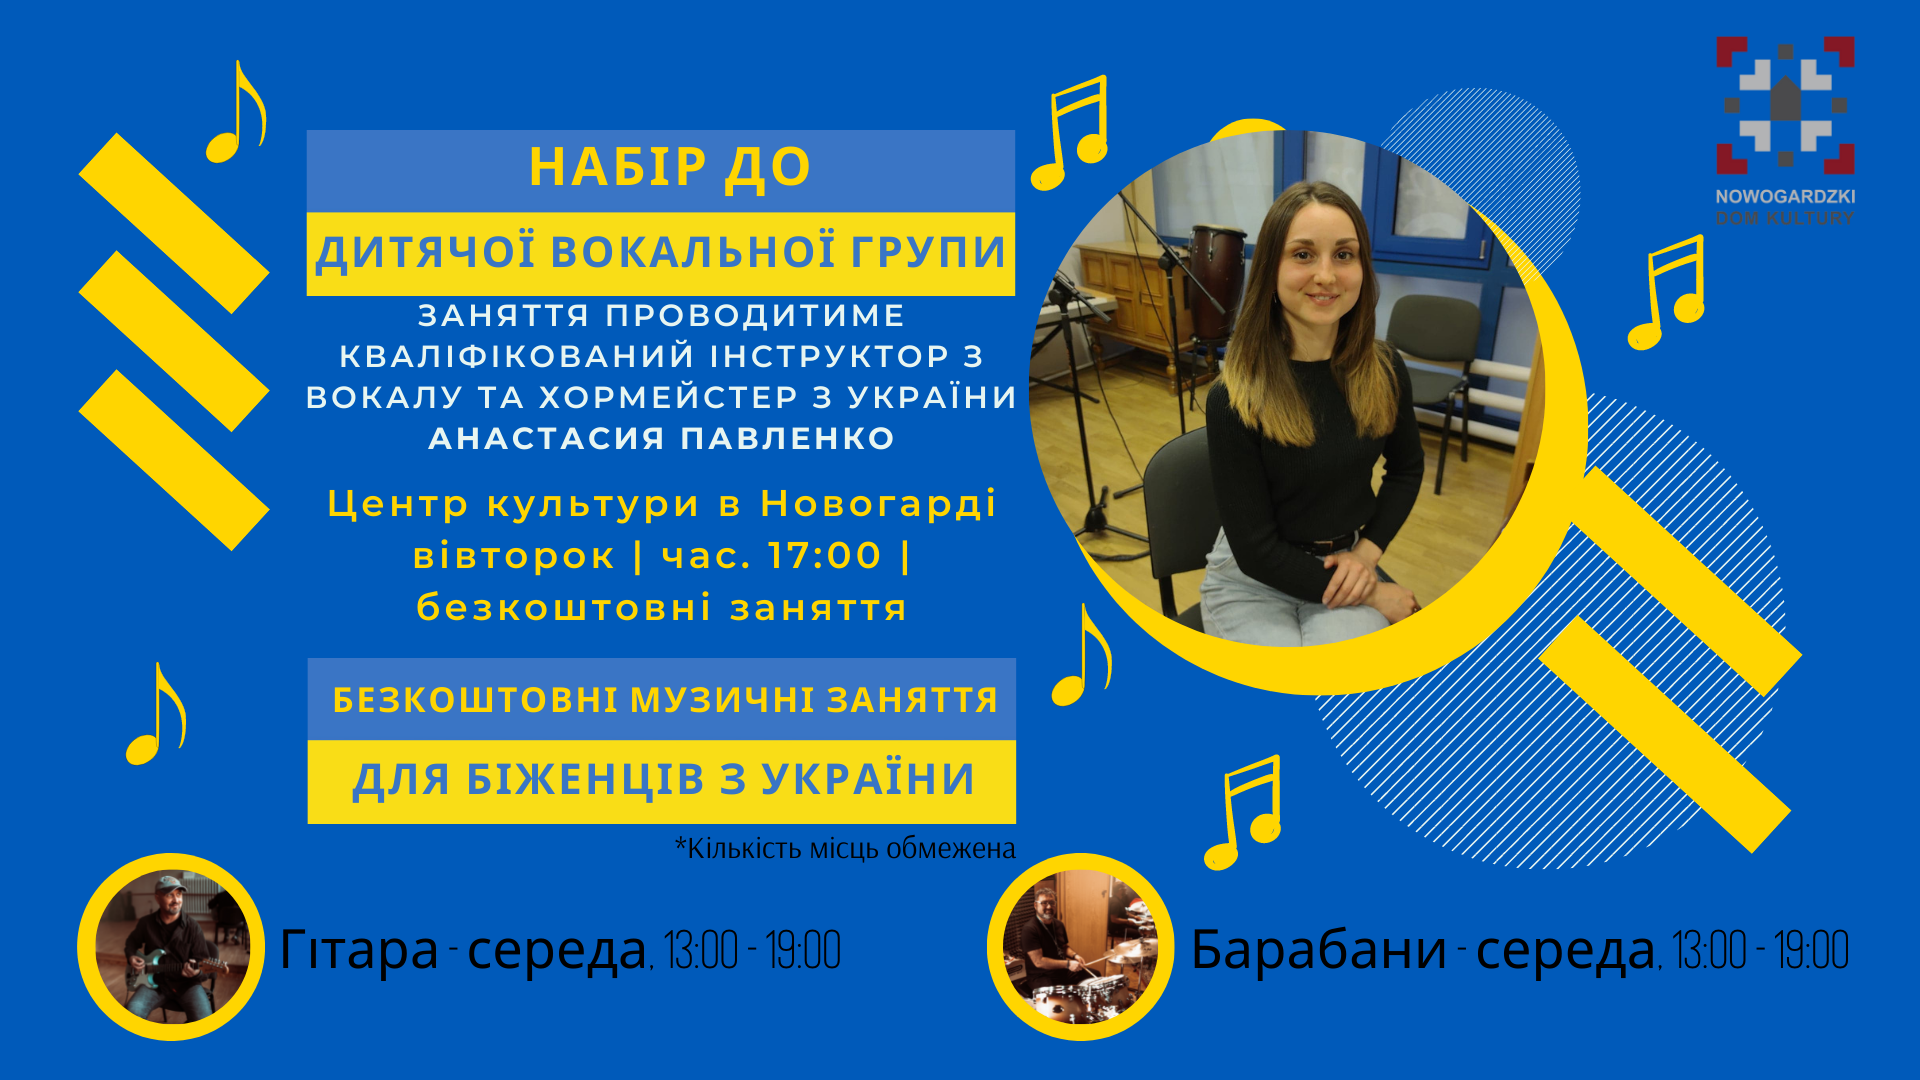 Безкоштовні музичні заняття для біженців з України | Bezpłatne Muzyczne Zajęcia dla dzieci z Ukrainy 